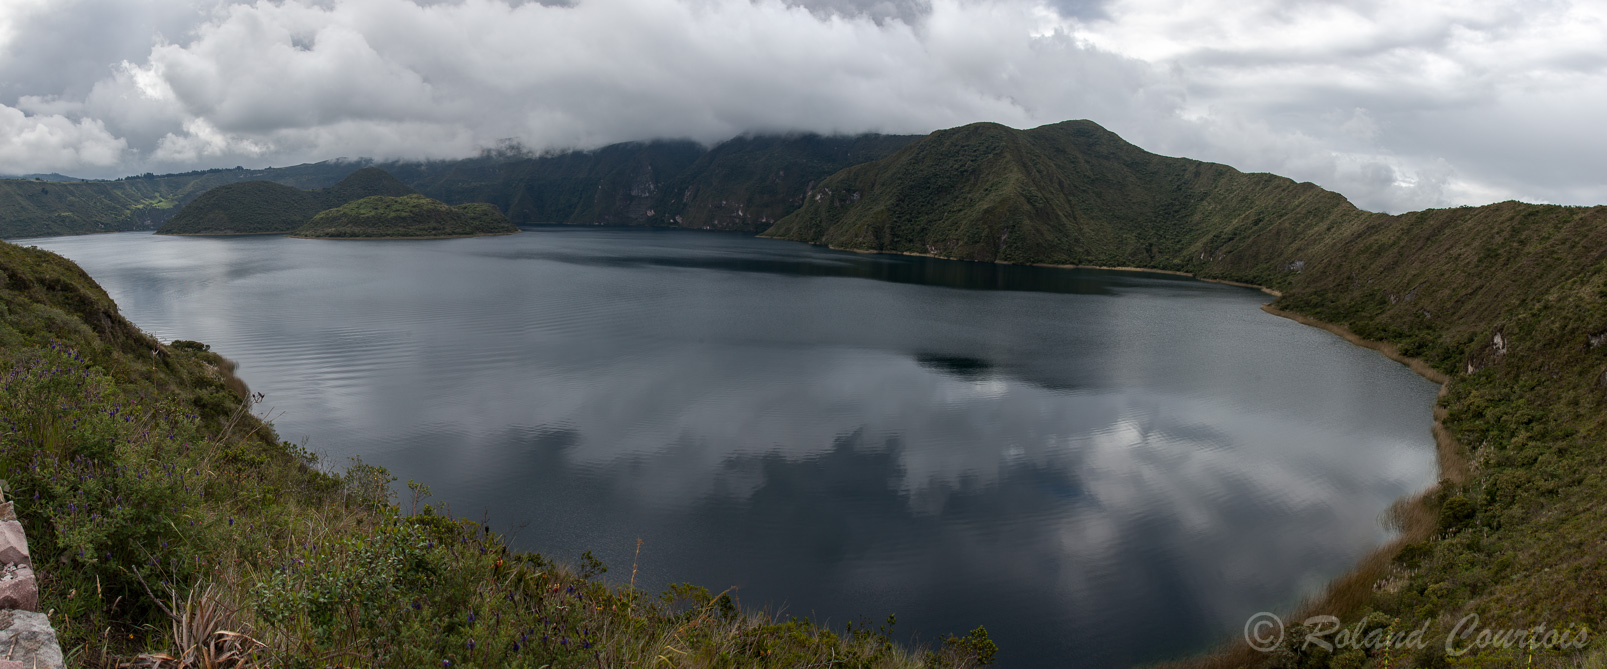 Panorama sur le lac de Cuicocha. Entre les deux îles il y a des émanations de gaz